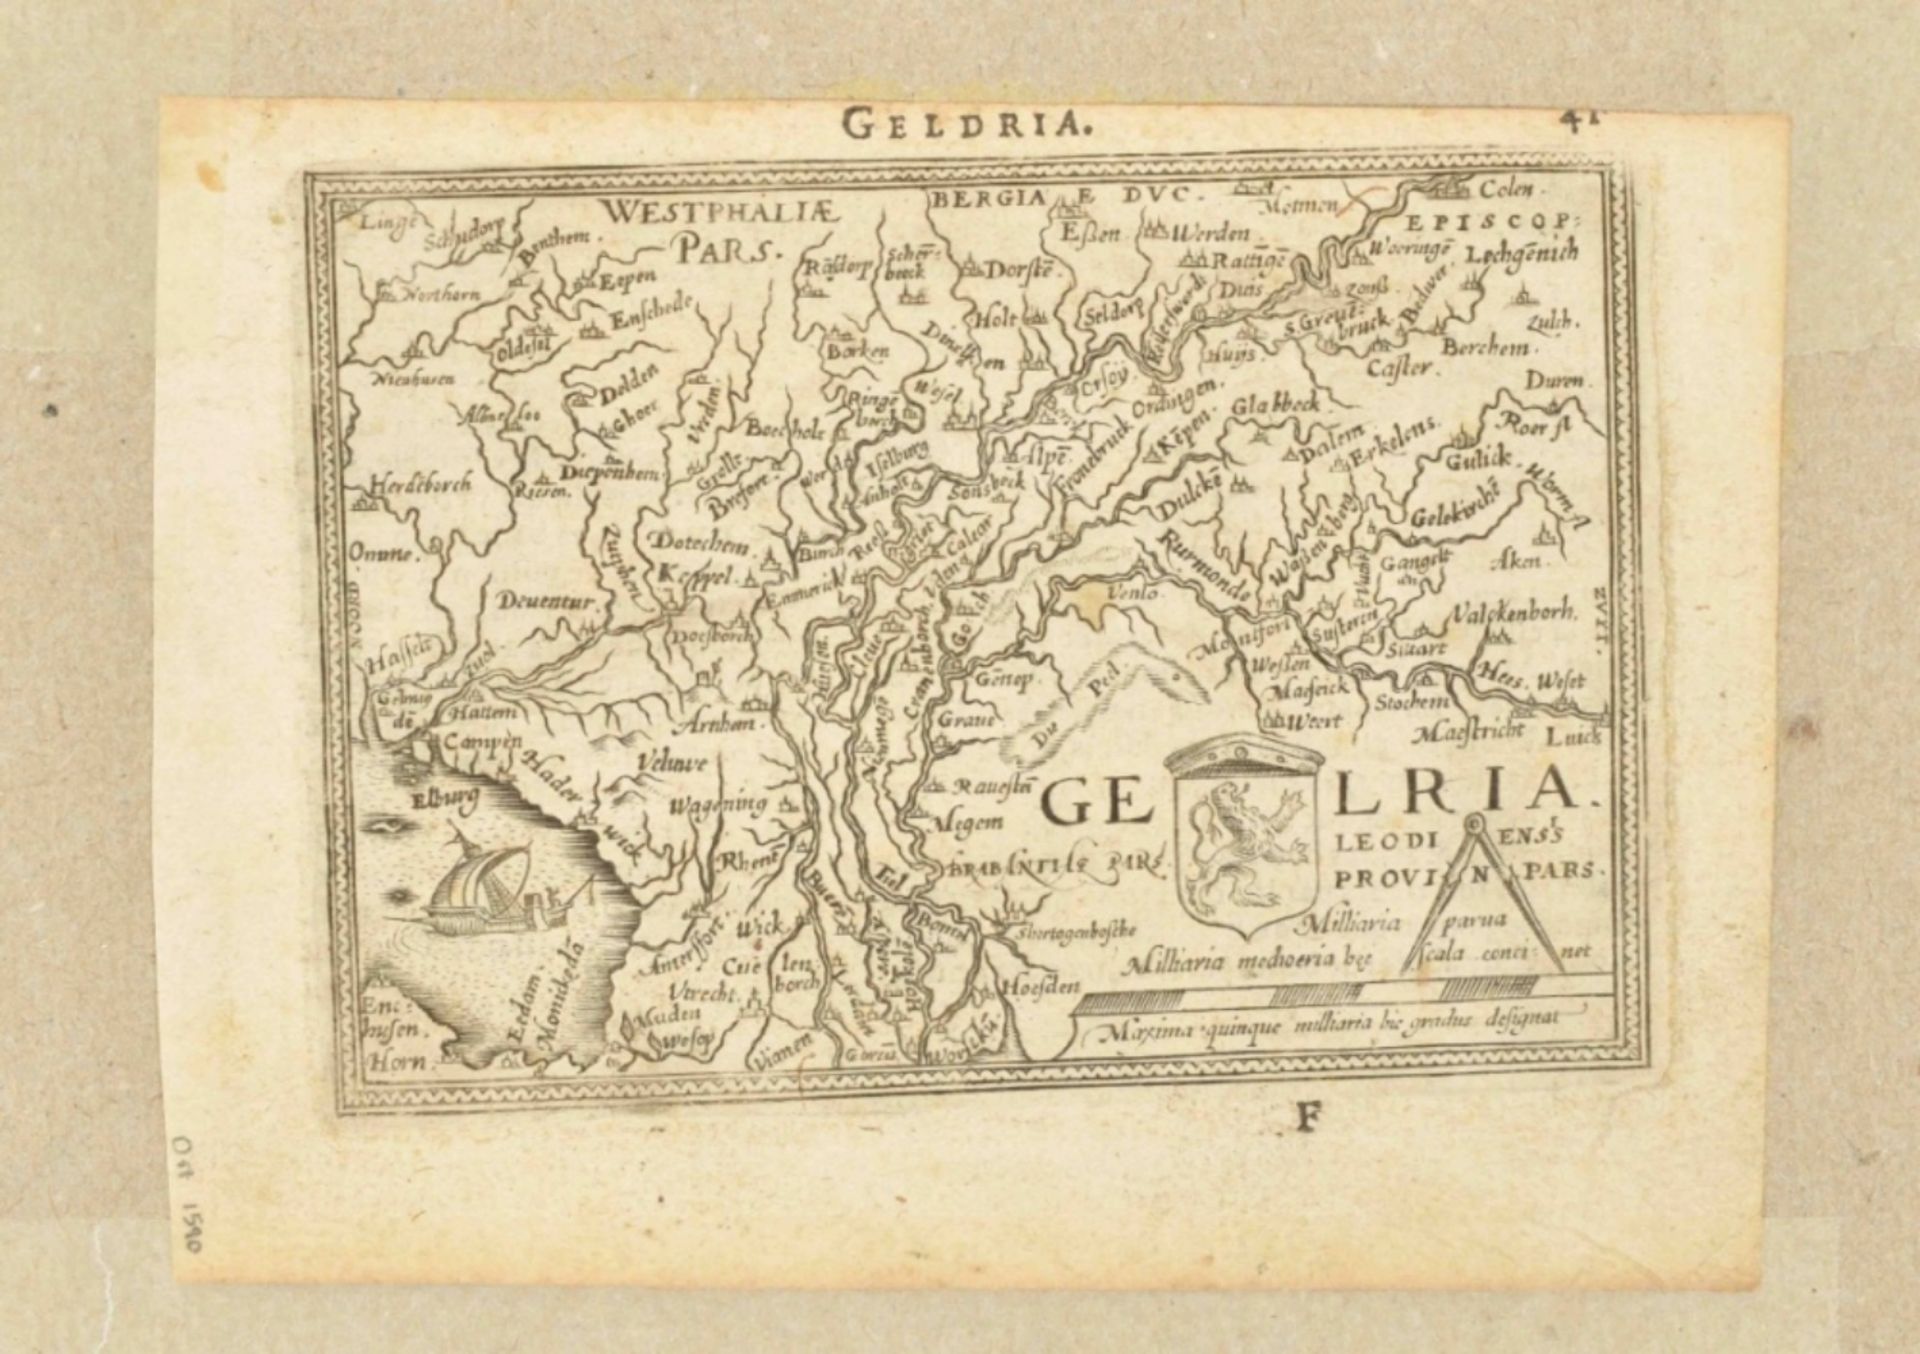 11 maps of Gelderland: Geldria Ducatus  - Bild 7 aus 8